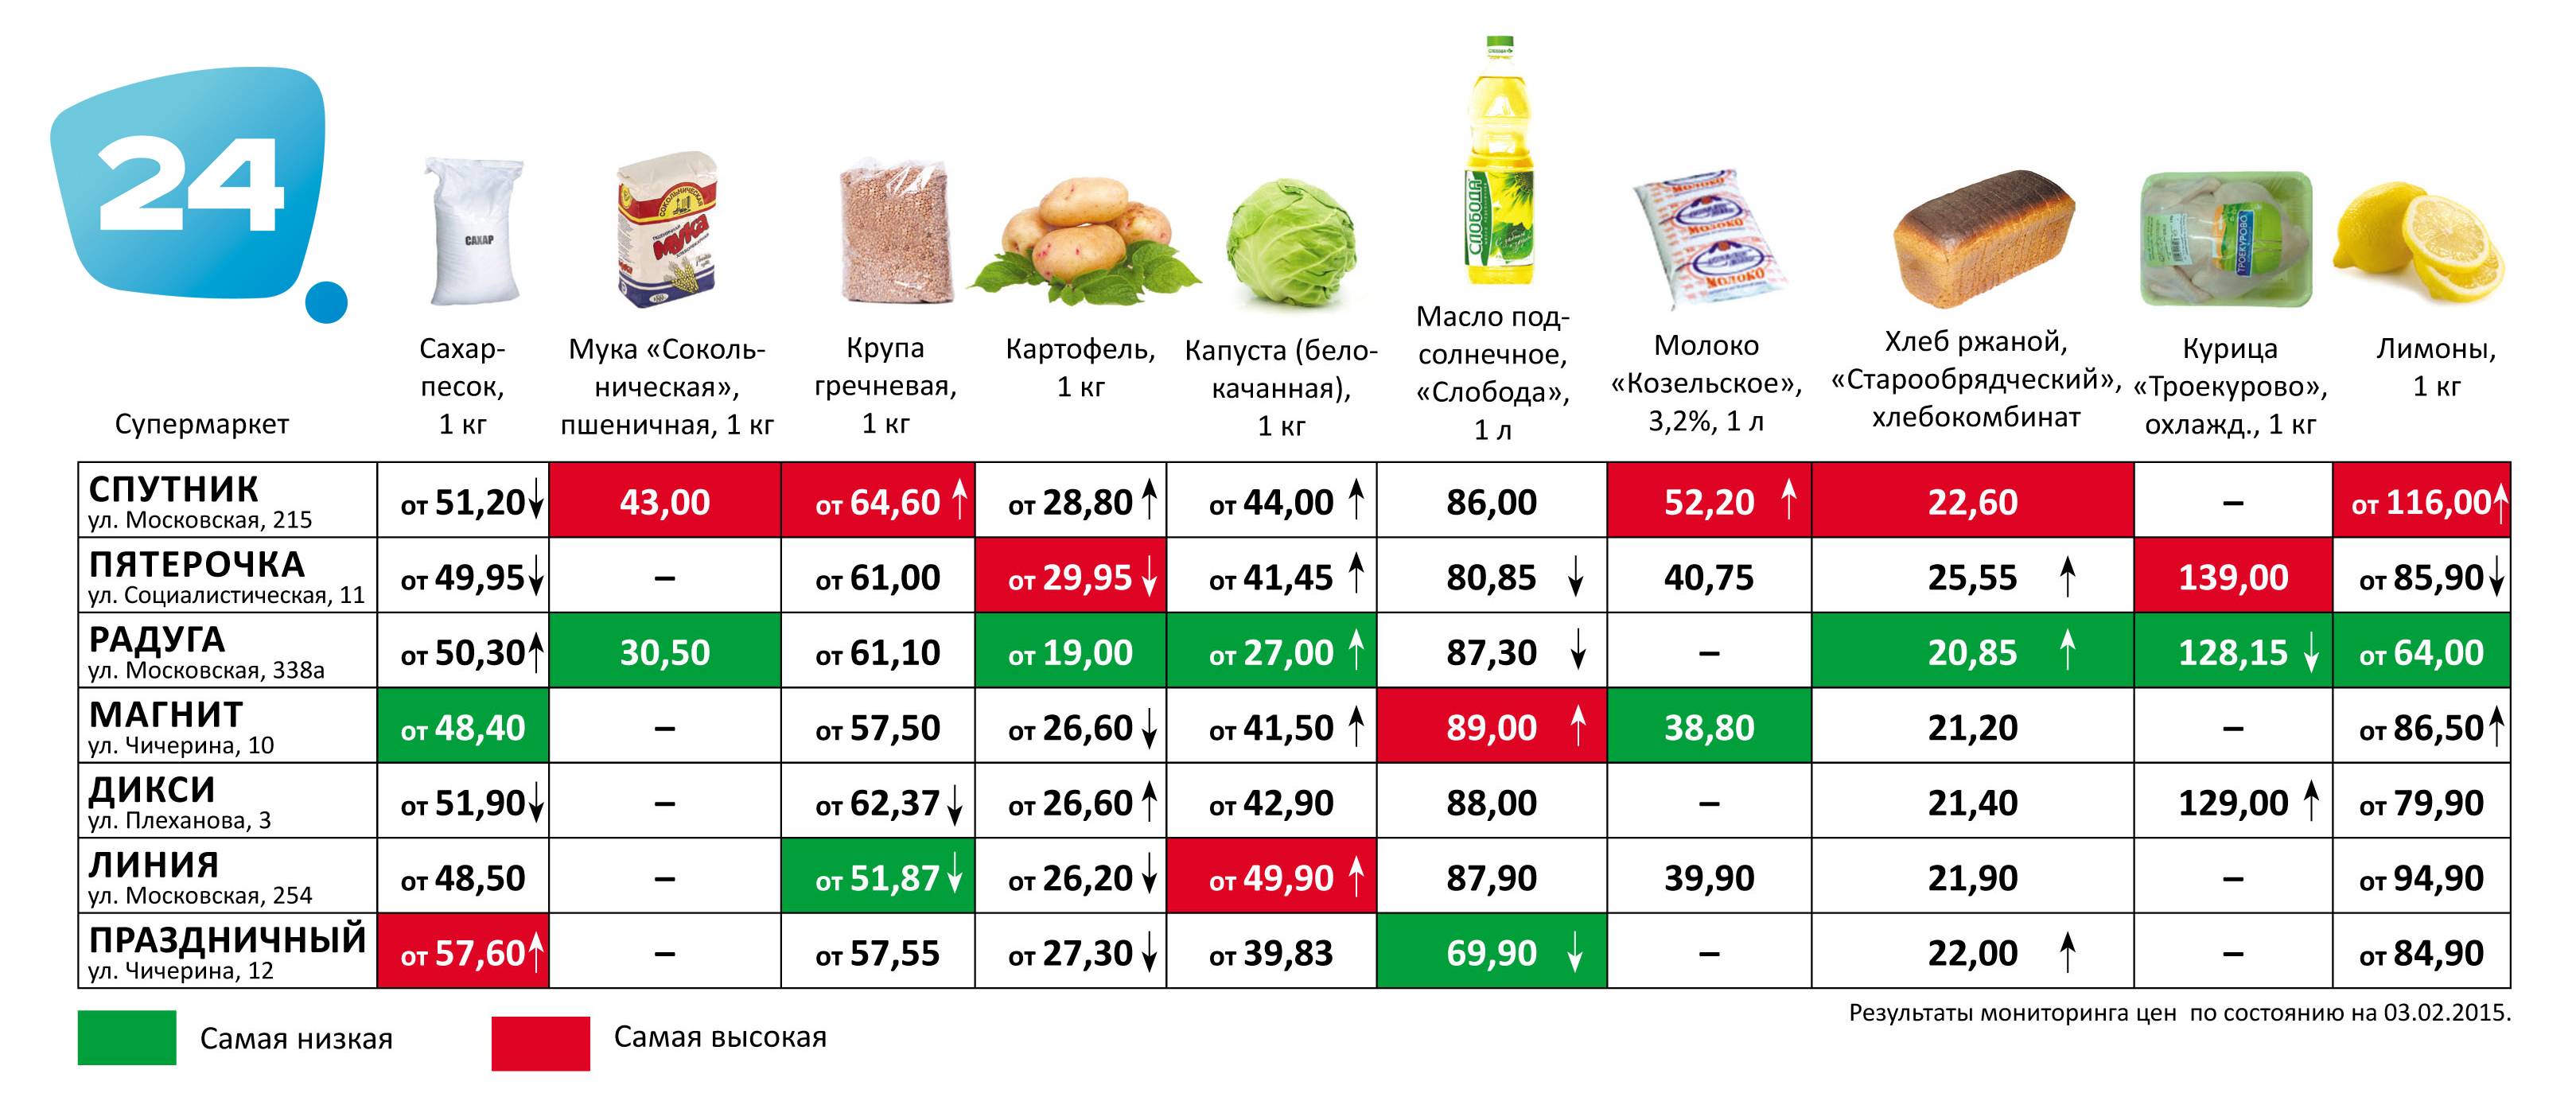 Категории продуктов питания в магазине. Таблица стоимости продуктов. Сравнение цен на товары. Сравнение цен на товары в разных магазинах. Таблица магазина продуктов.